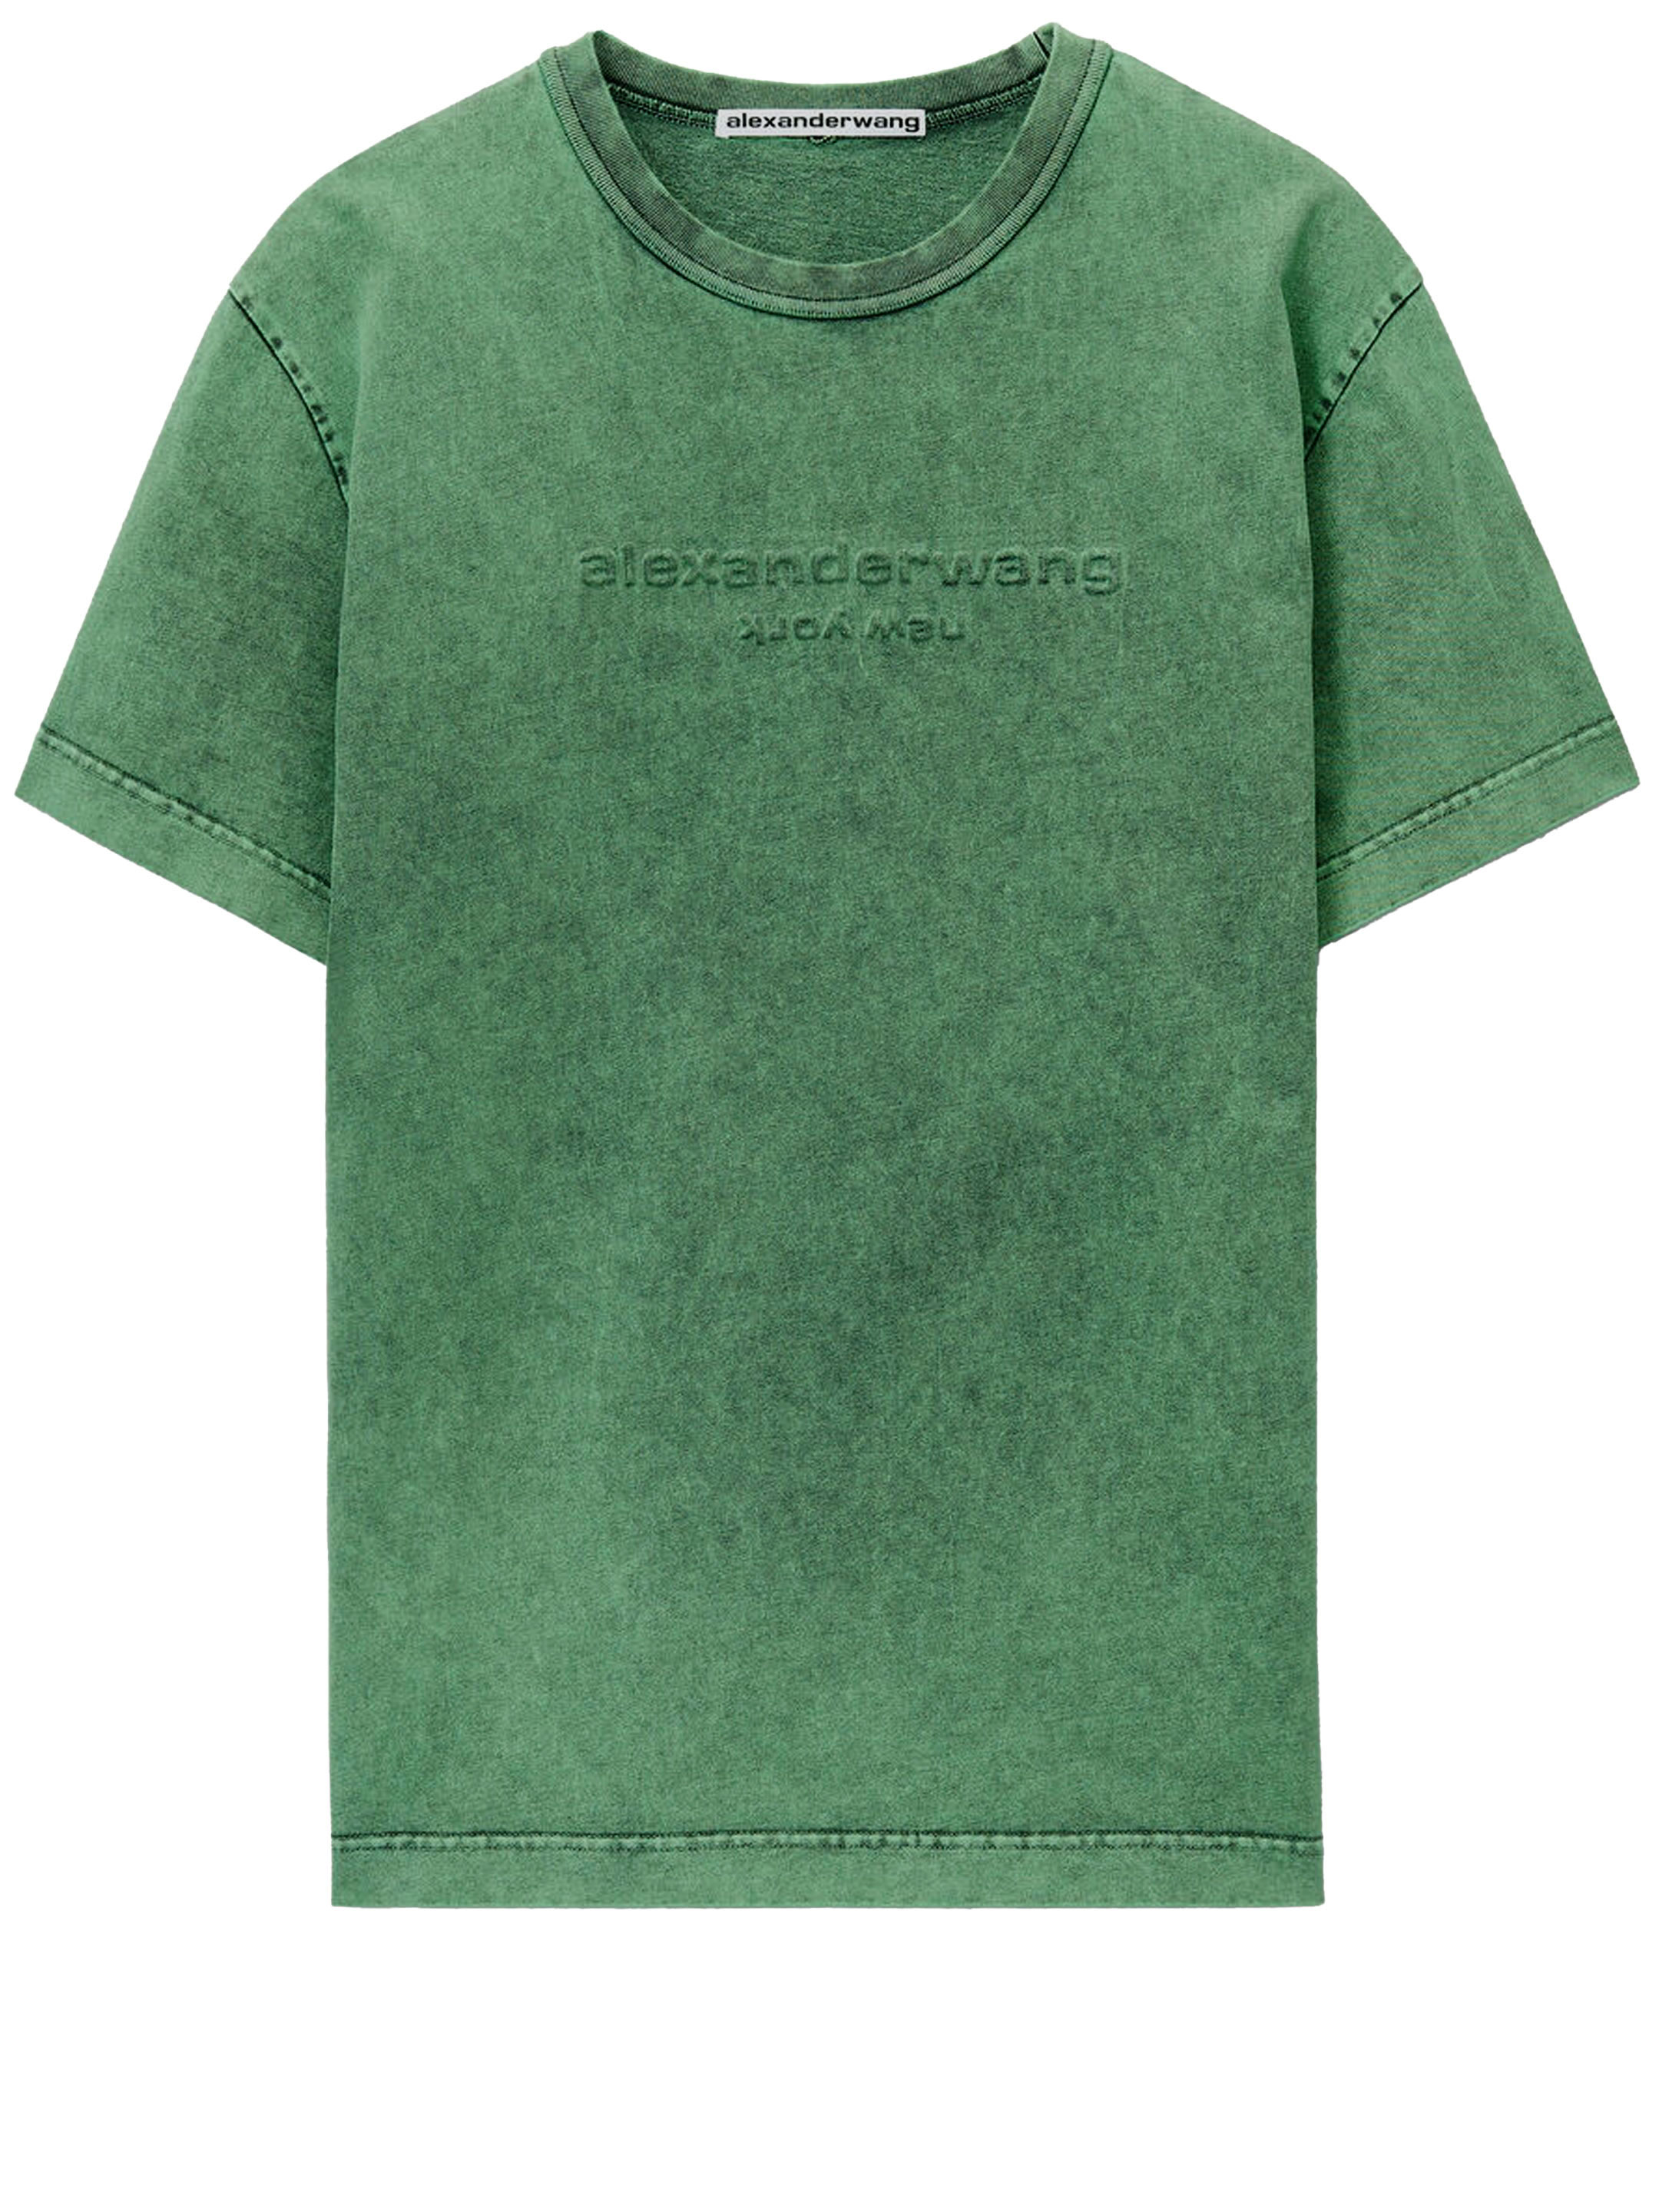 Футболка Alexander Wang Embossed logo, зеленый футболка из хлопкового джерси с выцветшим логотипом alexander wang цвет acid fern